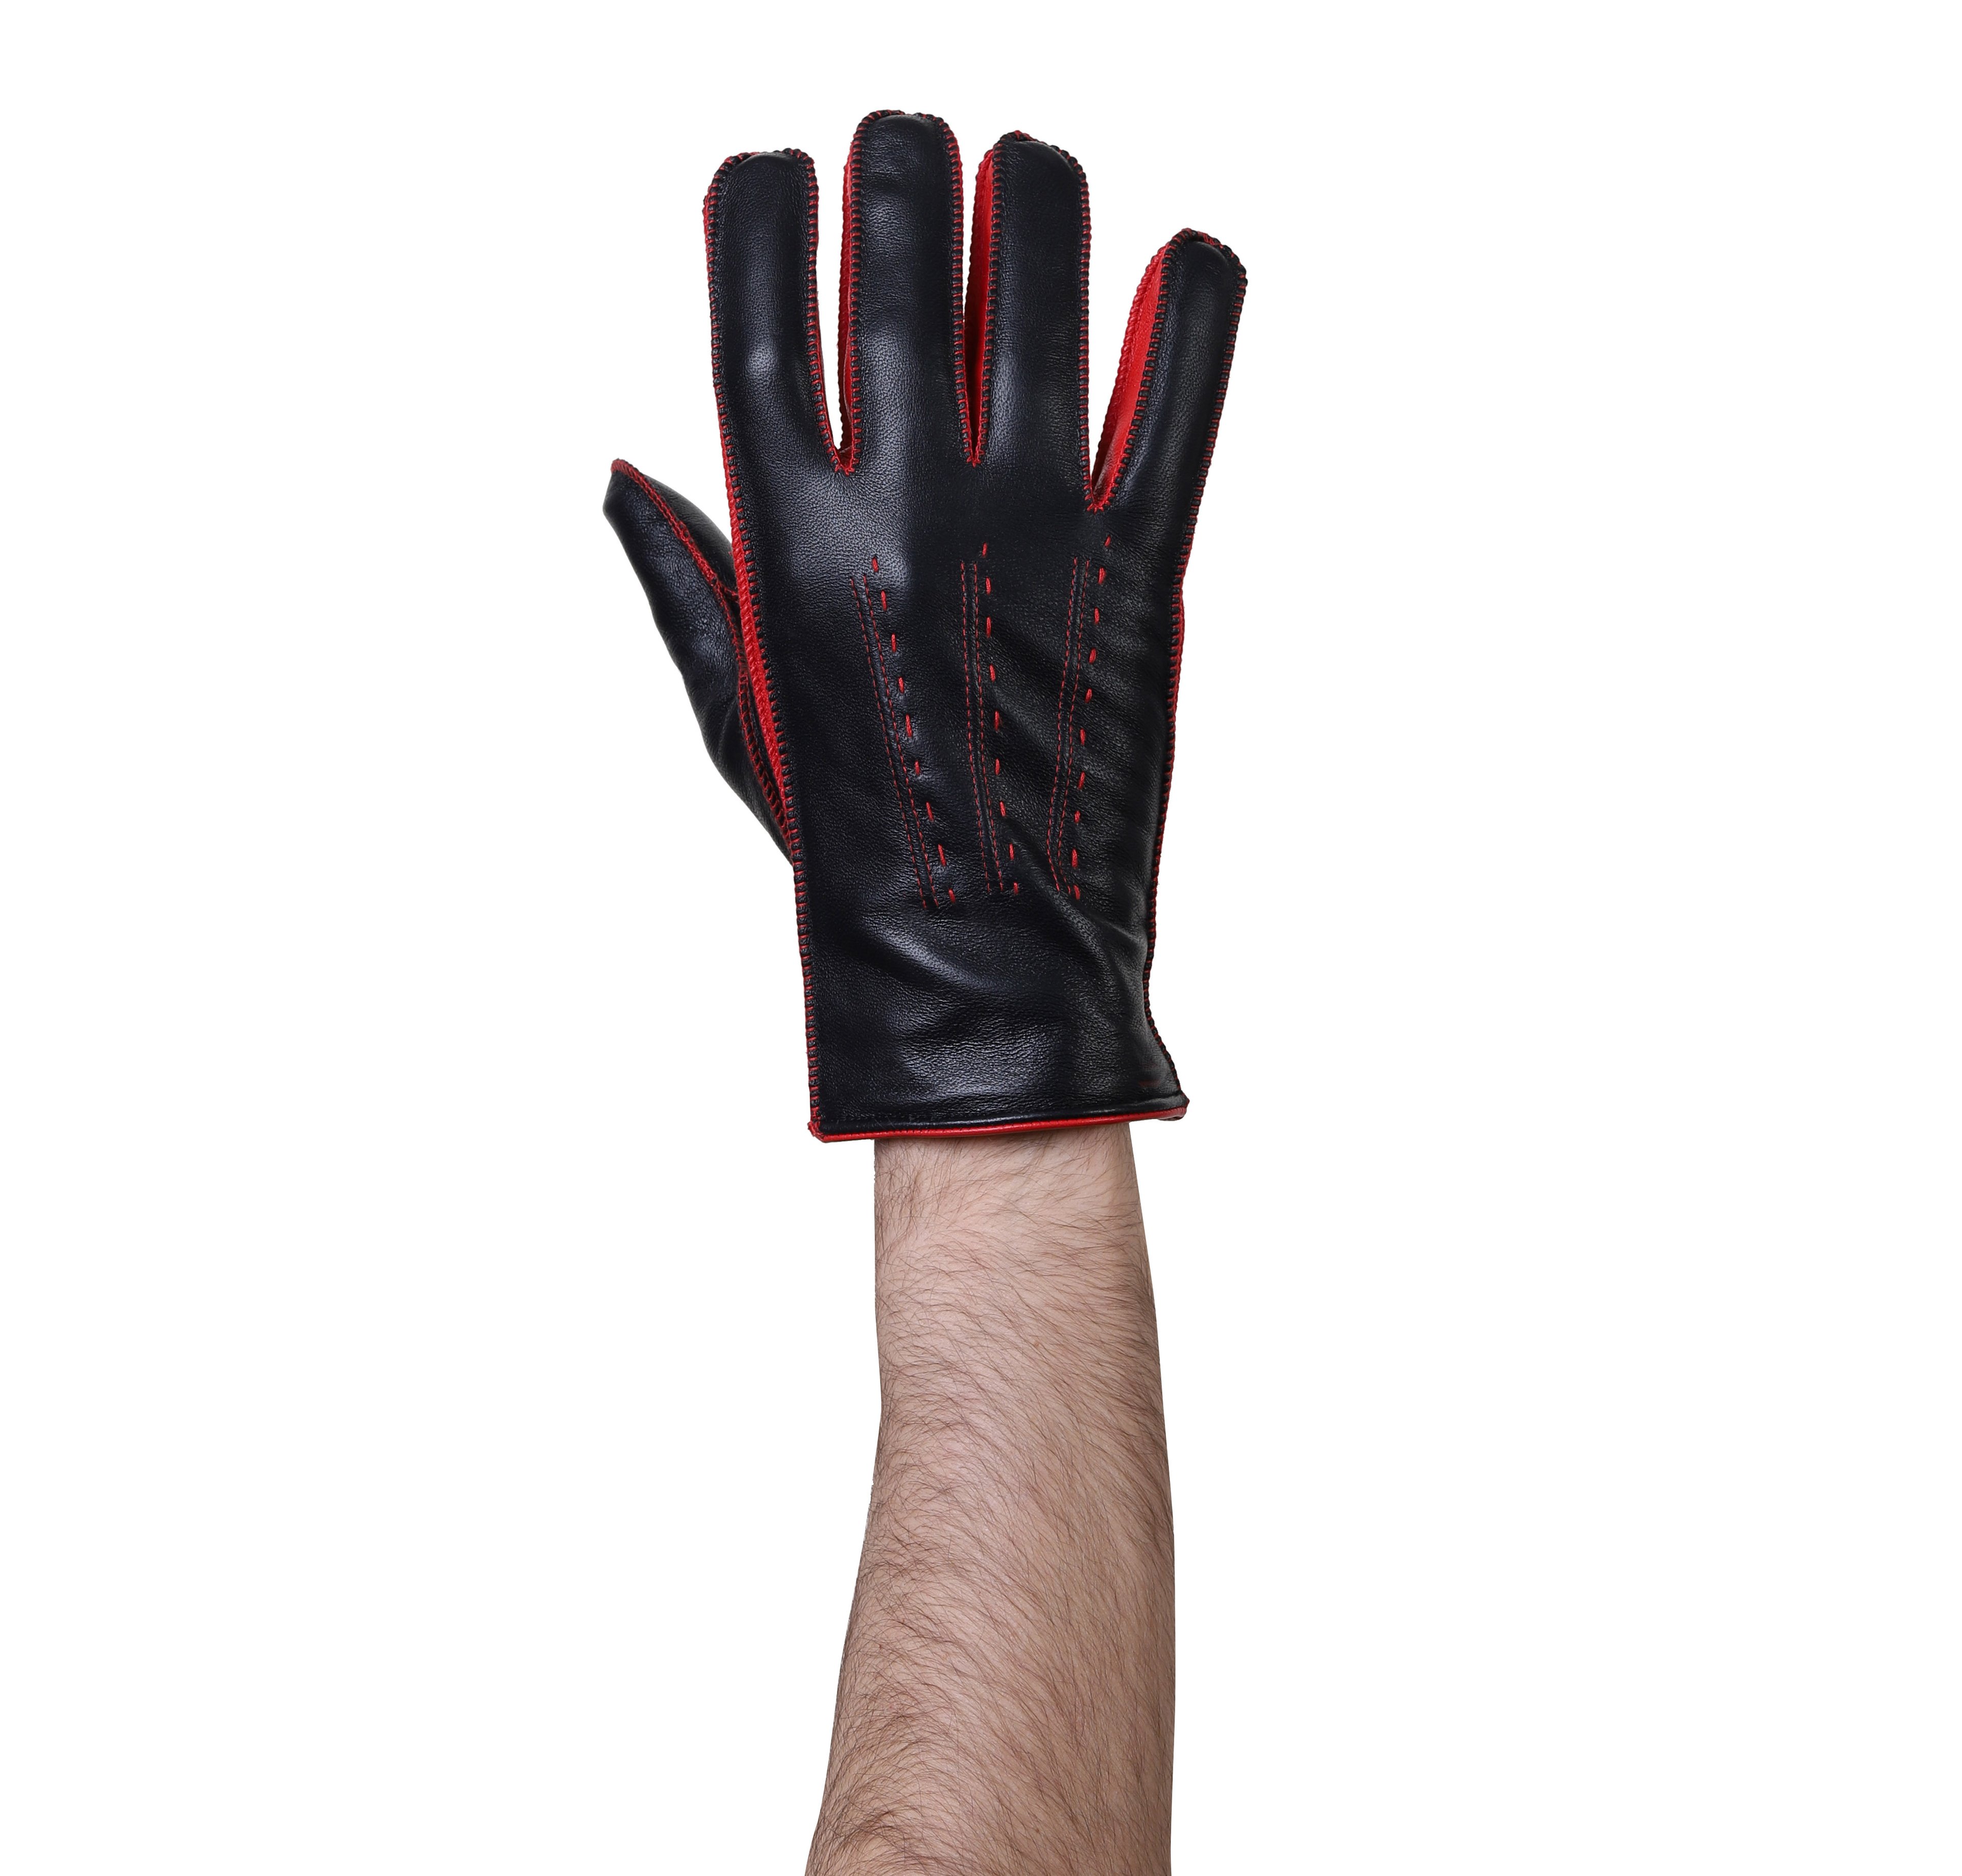 Boss Effect Leather Gloves for Men